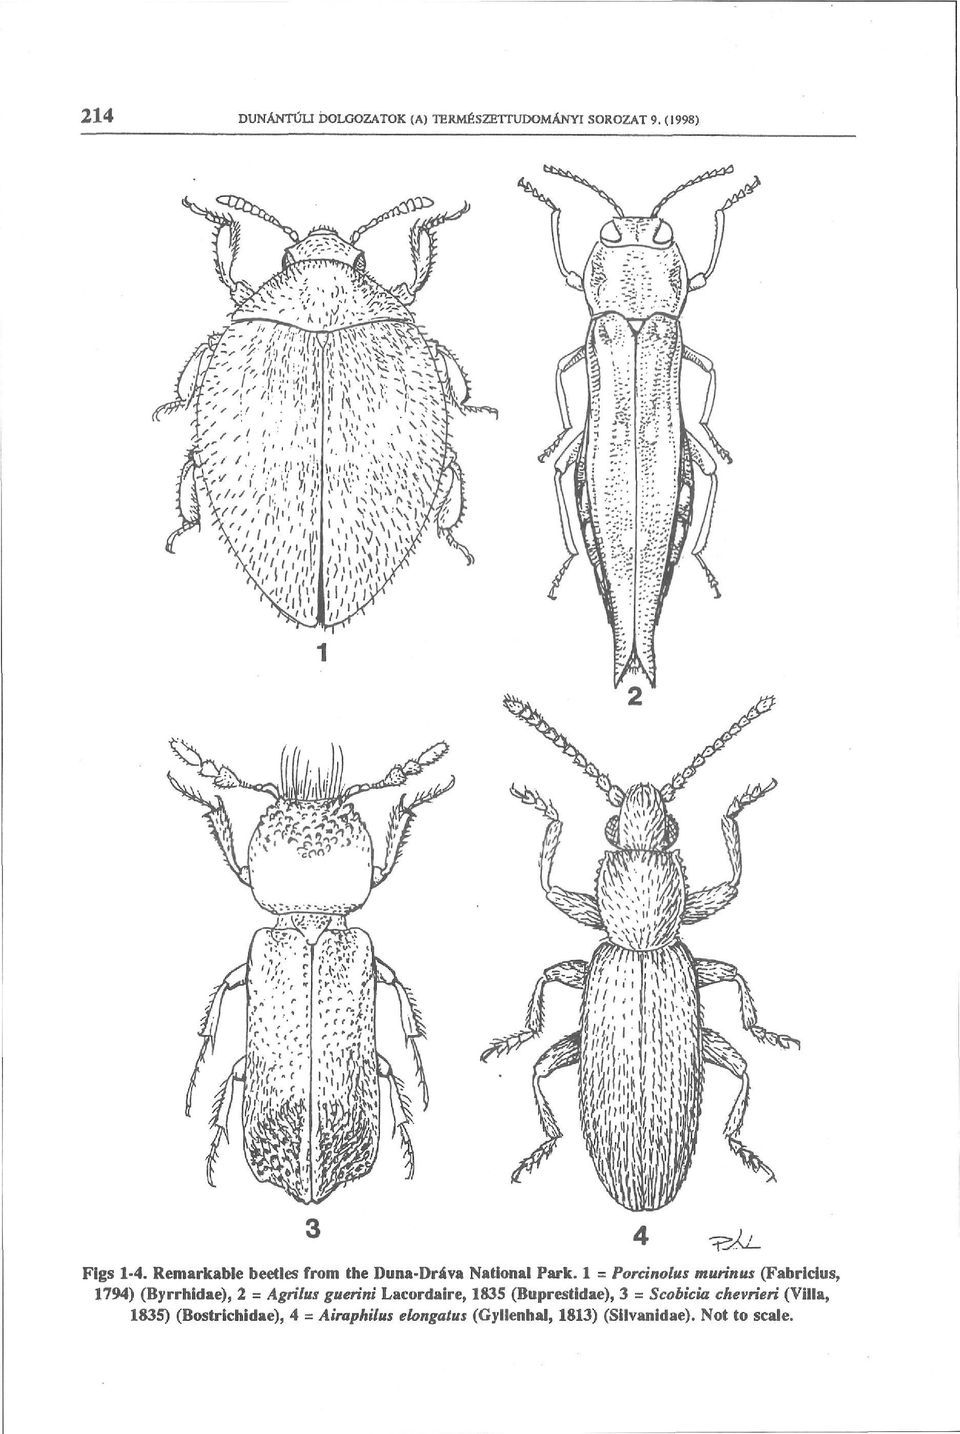 1 = Porcinolus murin us (Fabricius, 1794) (Byrrhidae), 2 = Agrilus guerini Lacordaire,